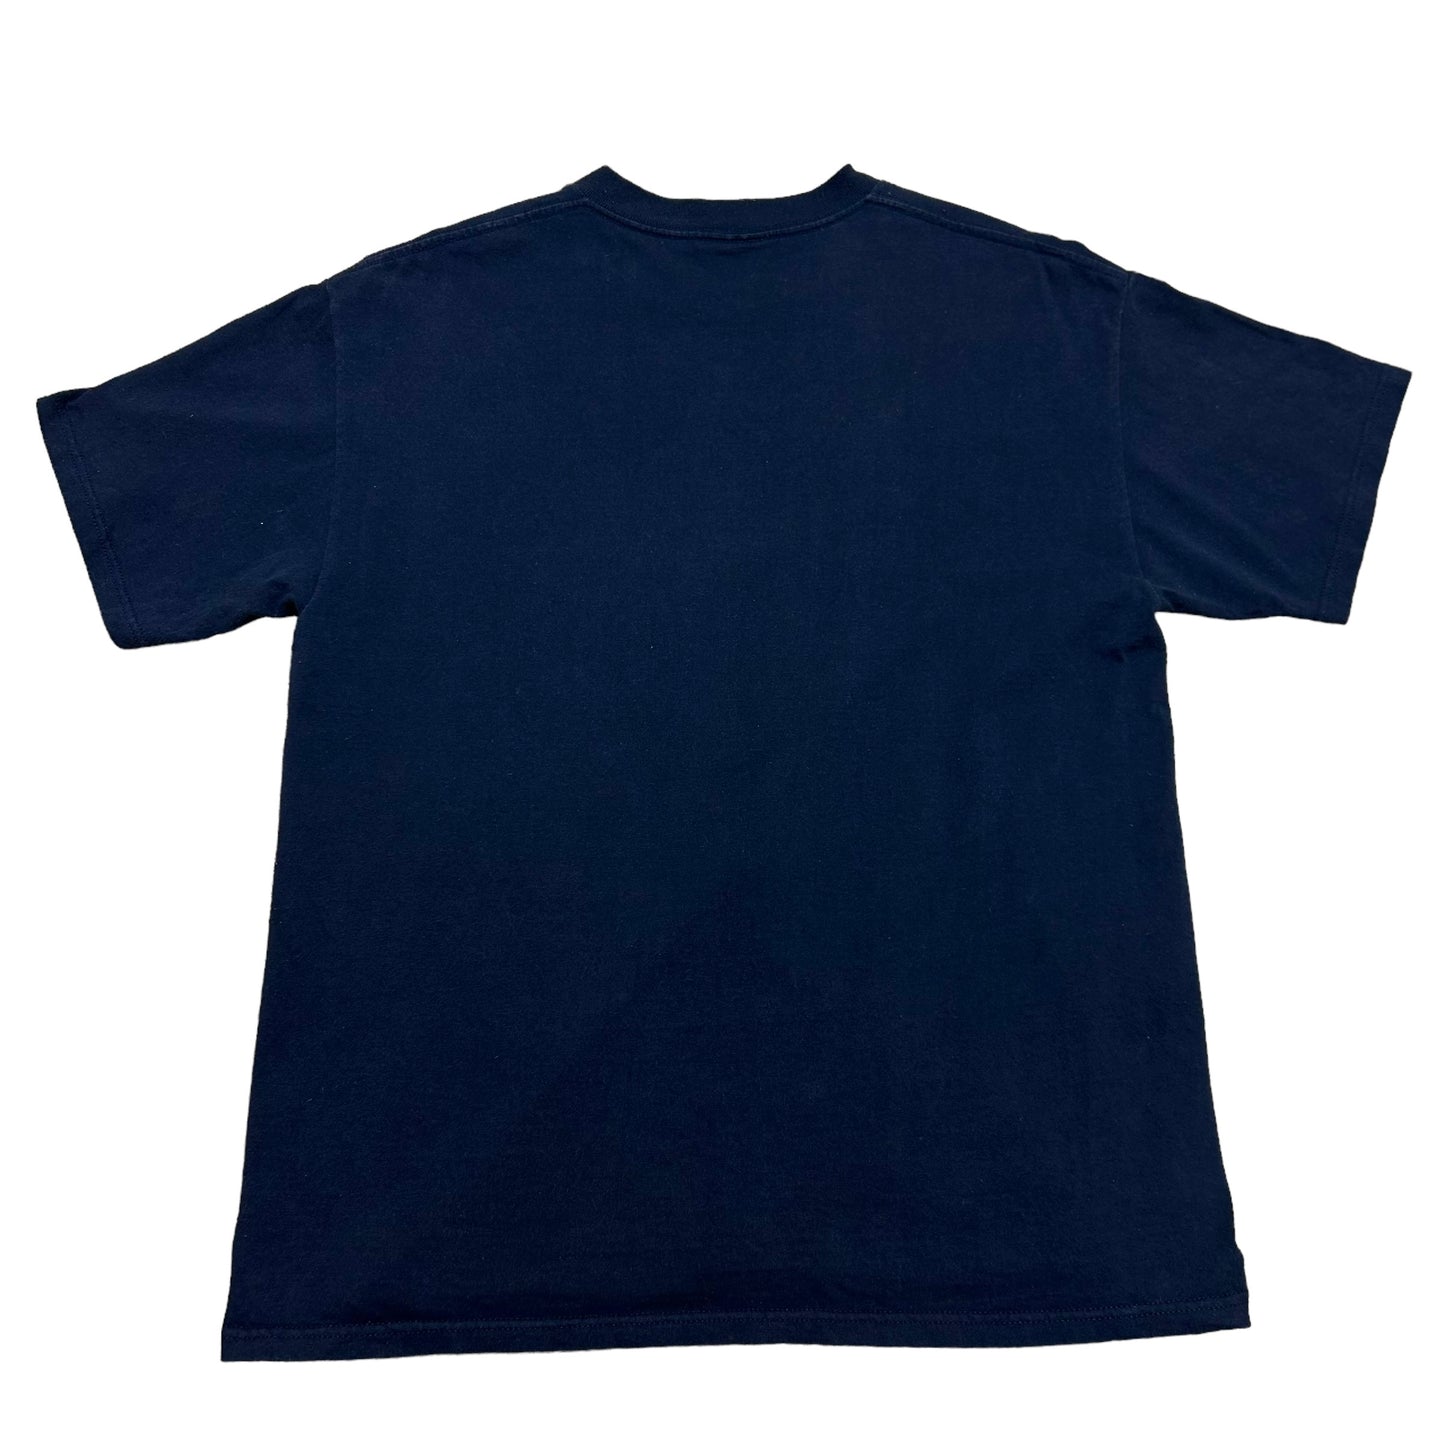 Vintage 1990s Denver Broncos Super Bowl XXXII (32) Champions Navy Blue Graphic T-Shirt - Size Large